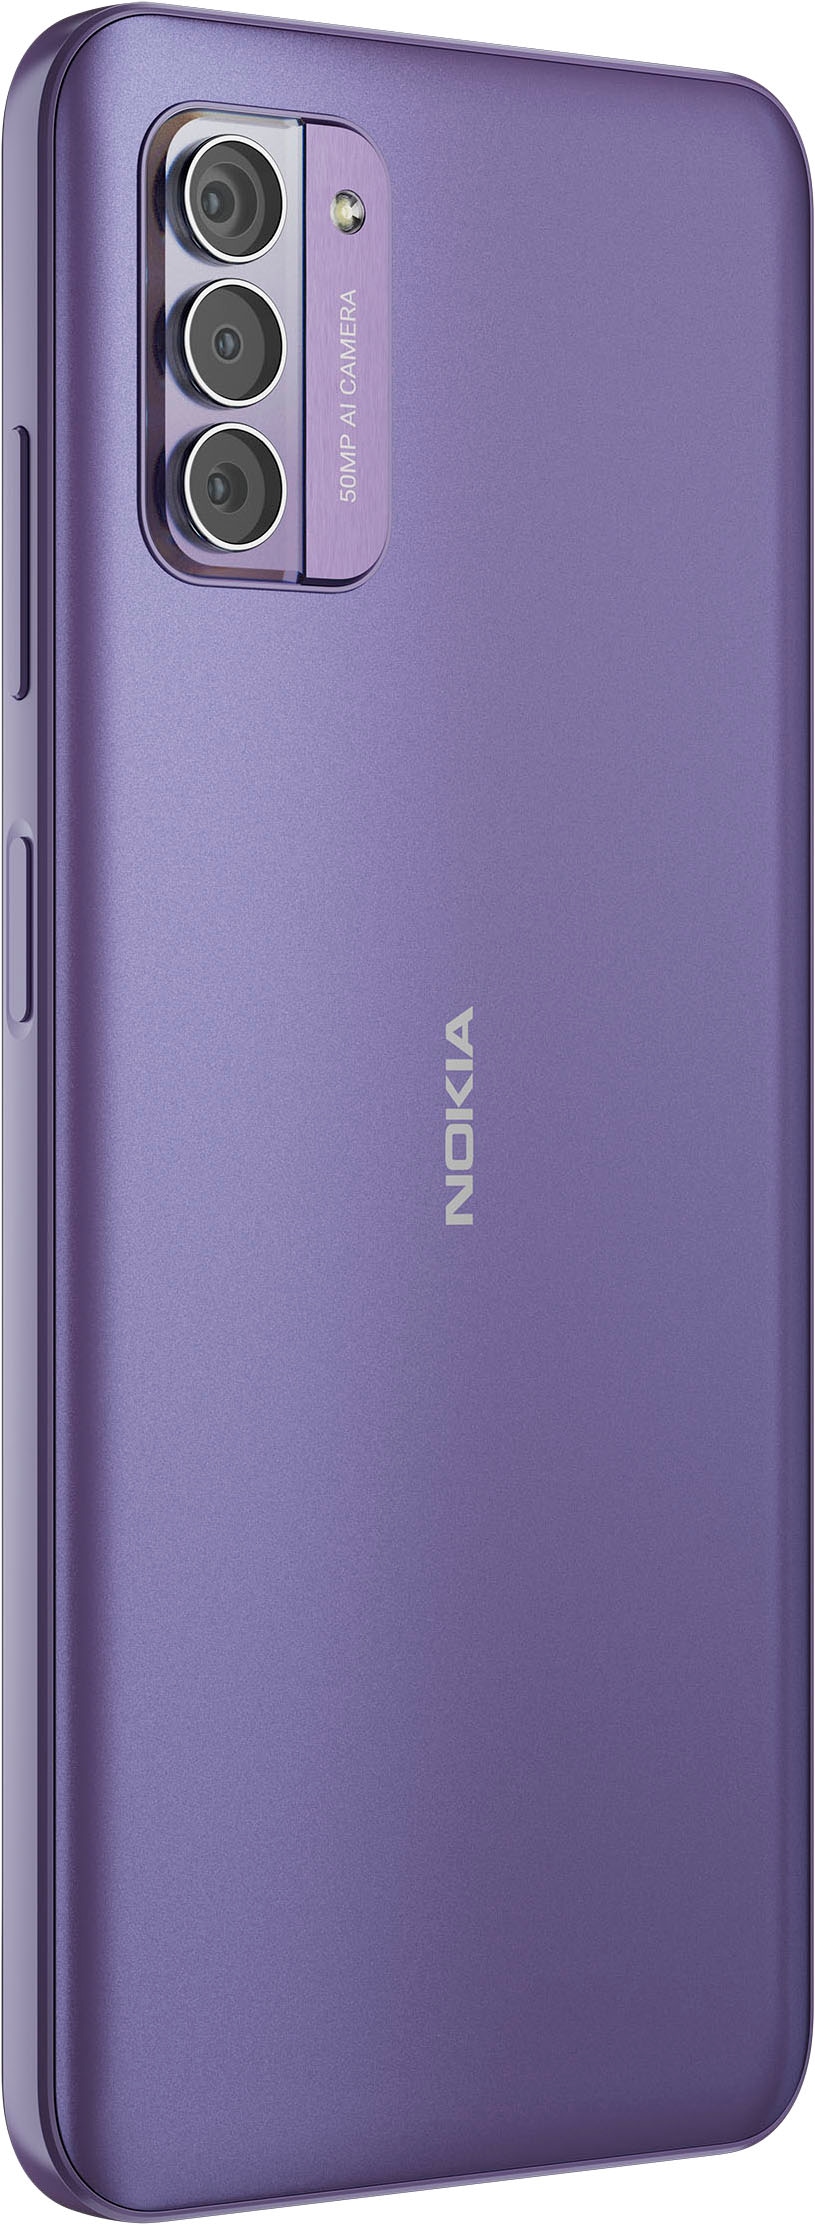 Speicherplatz, GB 16,9 128 Zoll, Smartphone »G42«, Kamera Garantie | 3 purple, UNIVERSAL ➥ Nokia MP XXL 50 cm/6,65 Jahre